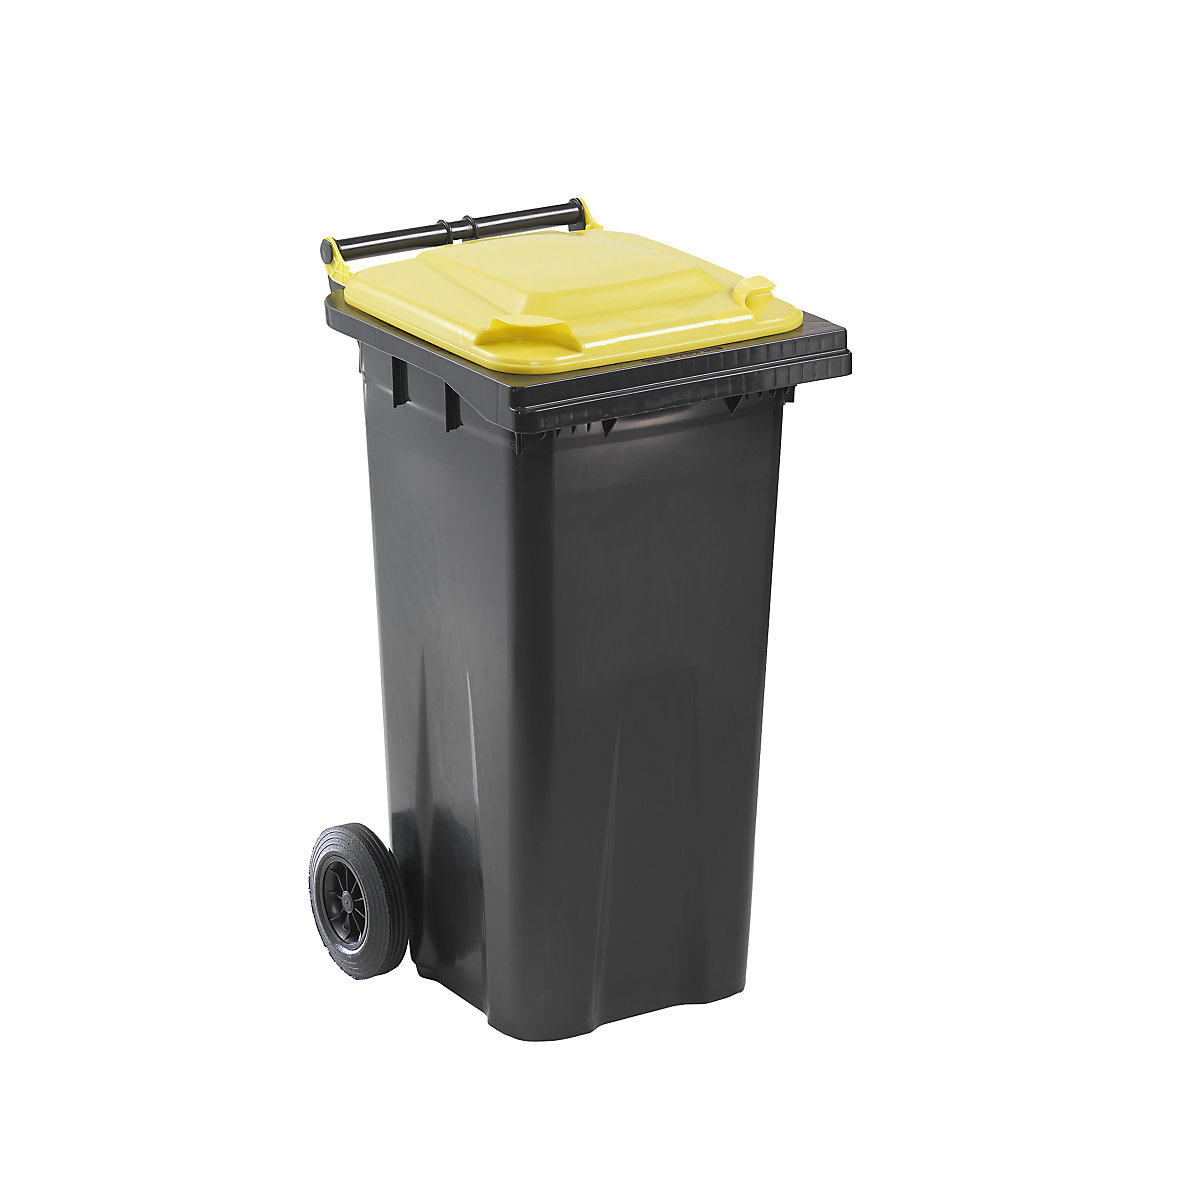 Contentor de lixo conforme a norma DIN EN 840